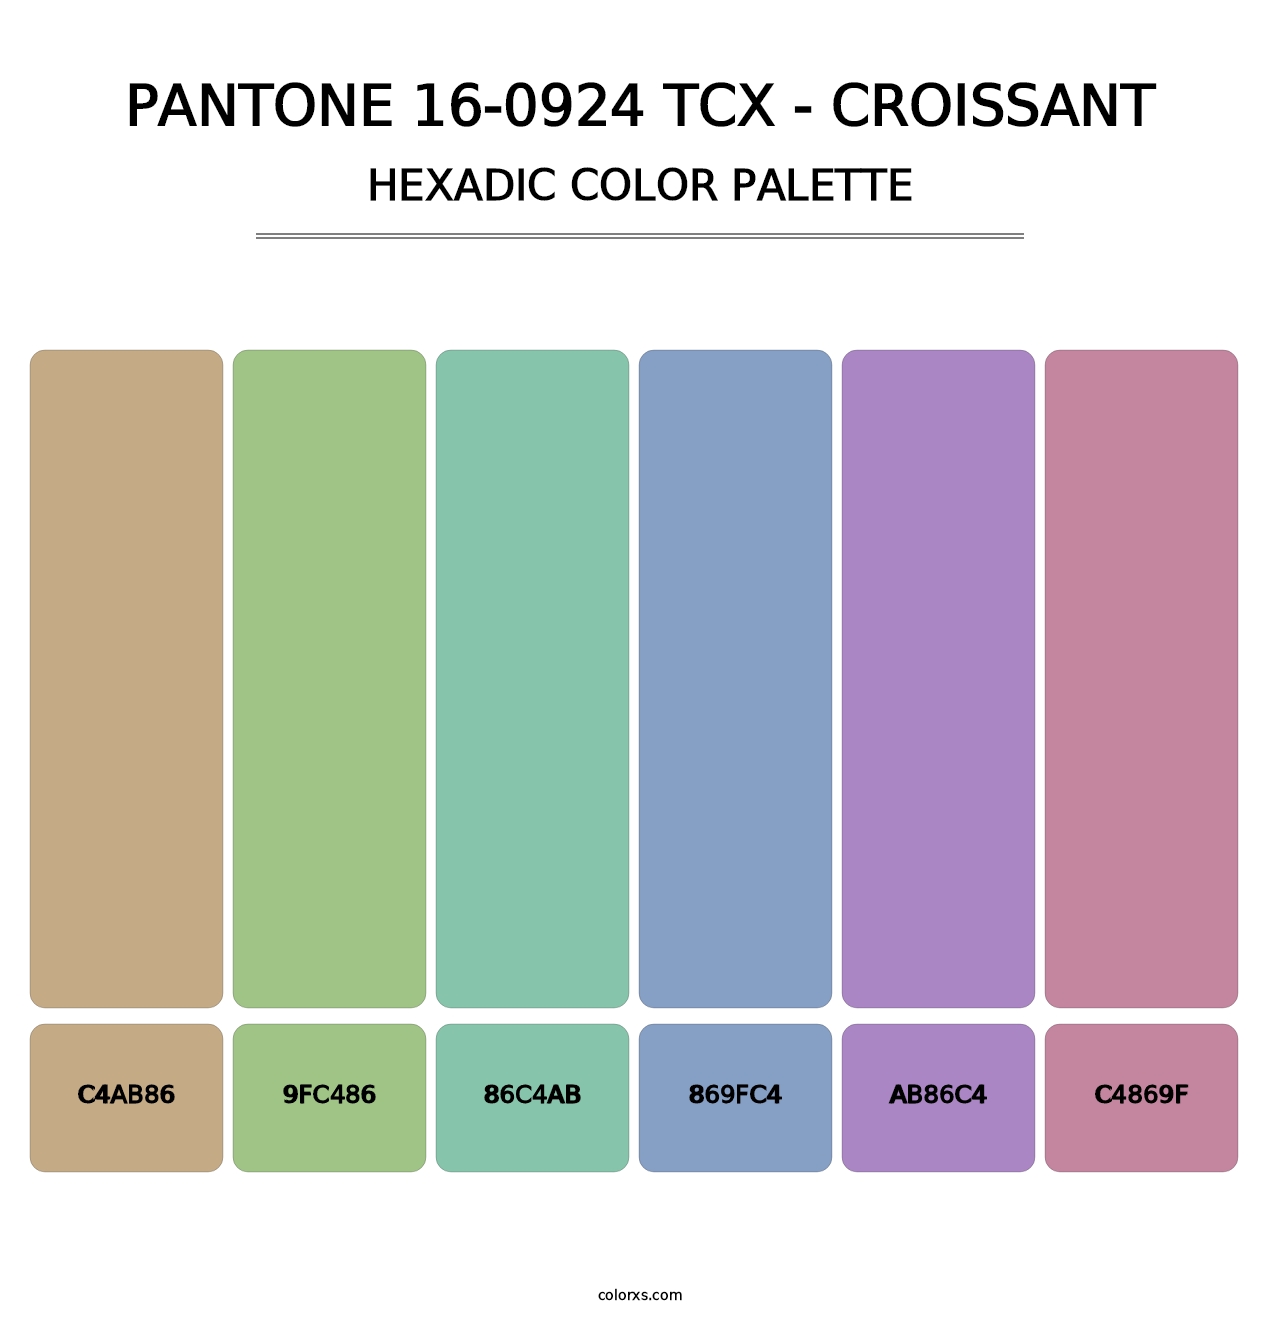 PANTONE 16-0924 TCX - Croissant - Hexadic Color Palette